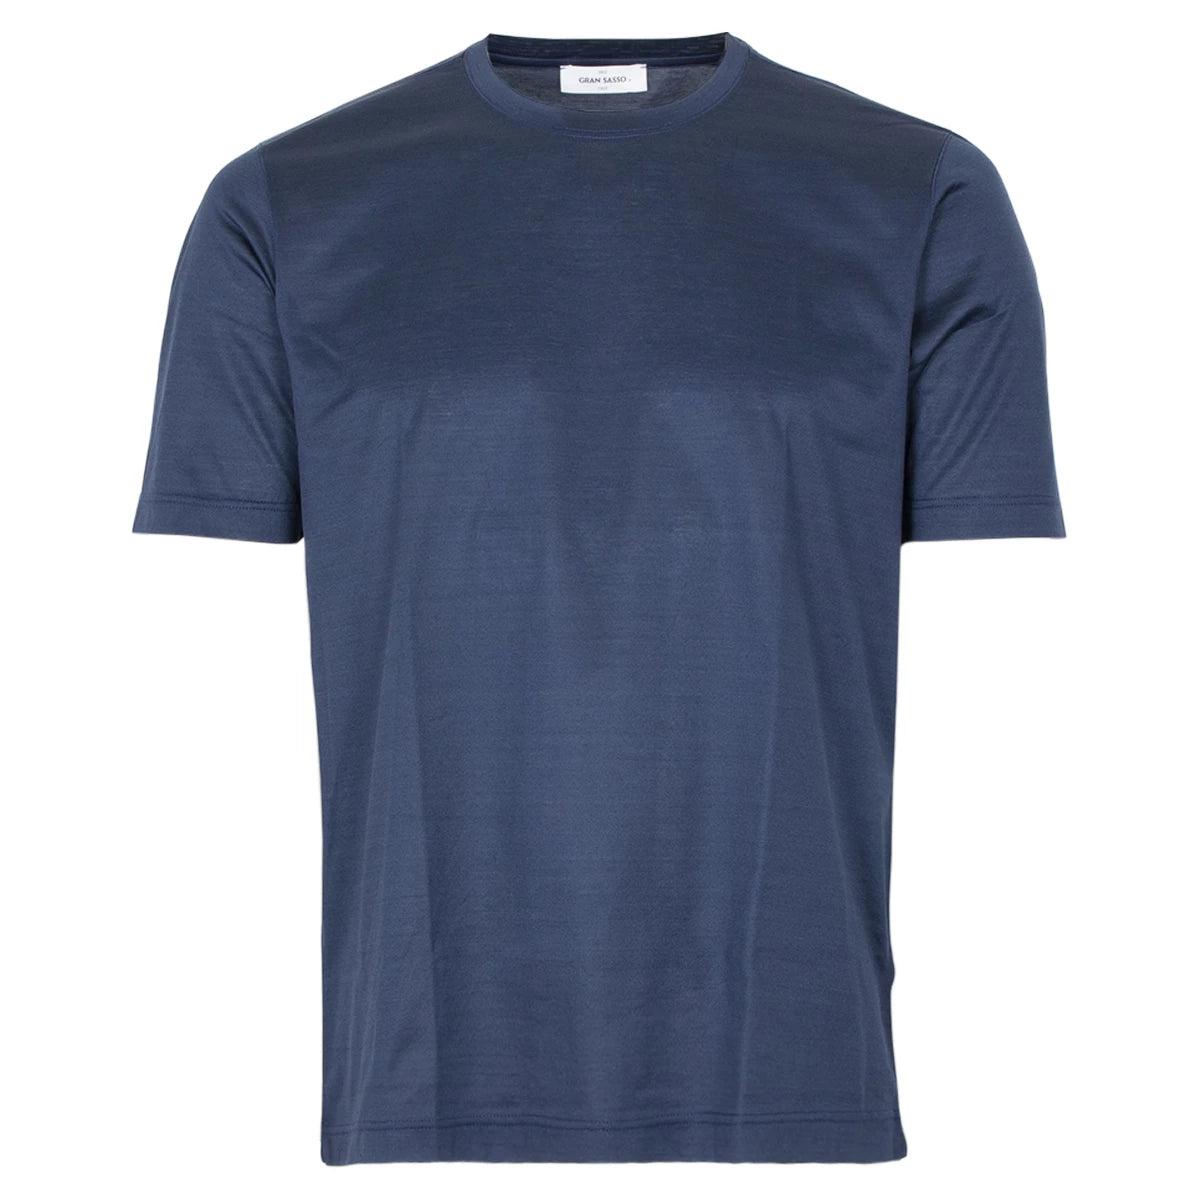 Gran Sasso T-shirt donkerblauw